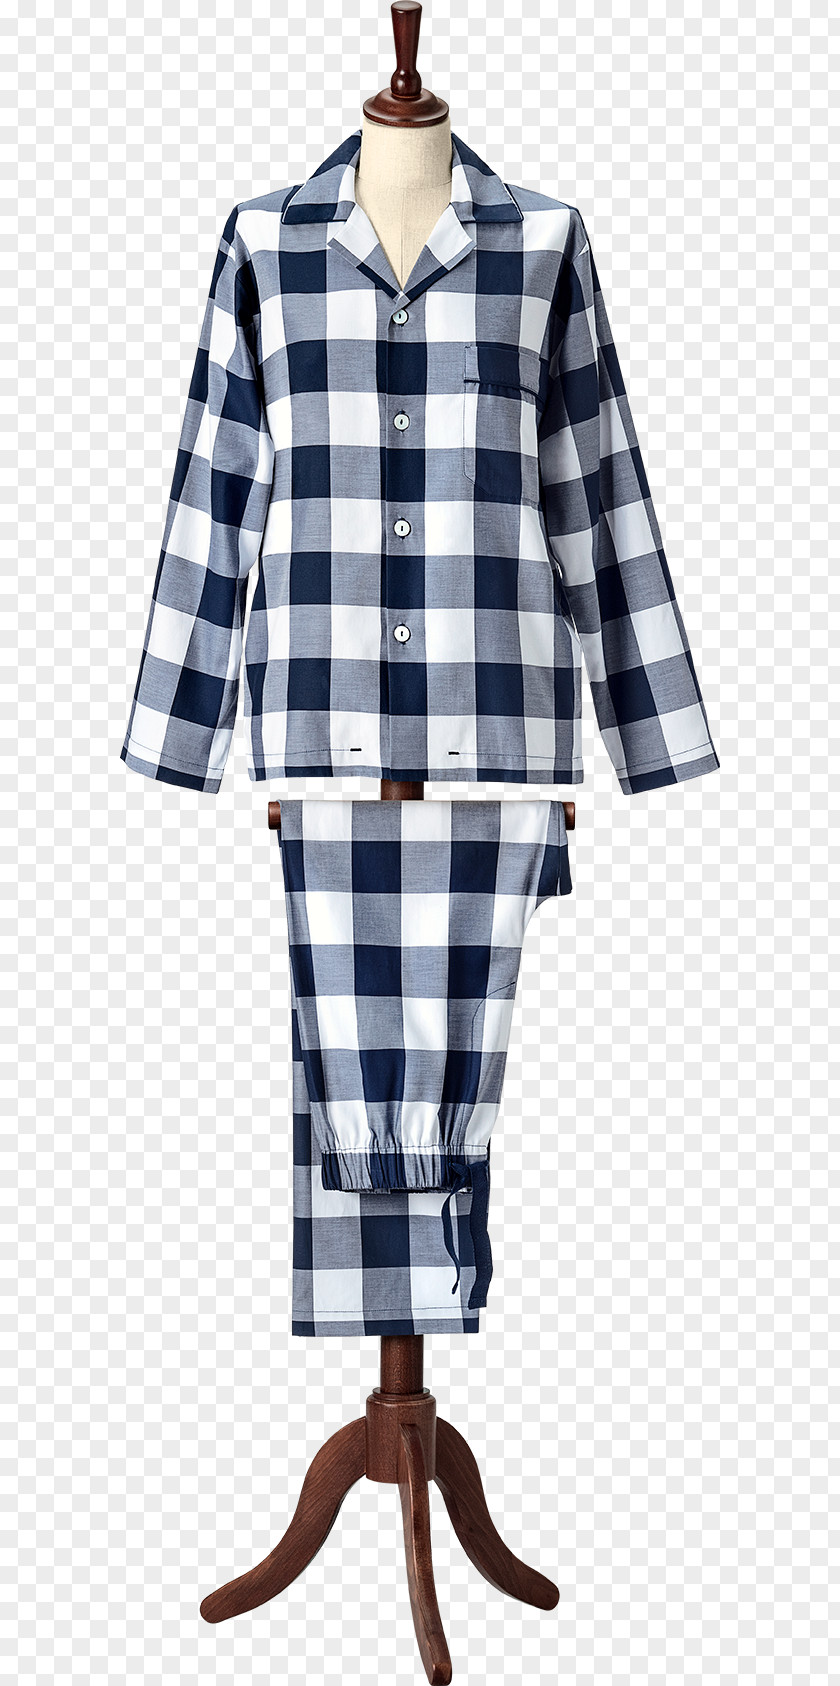 Bed Slipper Pajamas Nightwear Hästens Clothing PNG